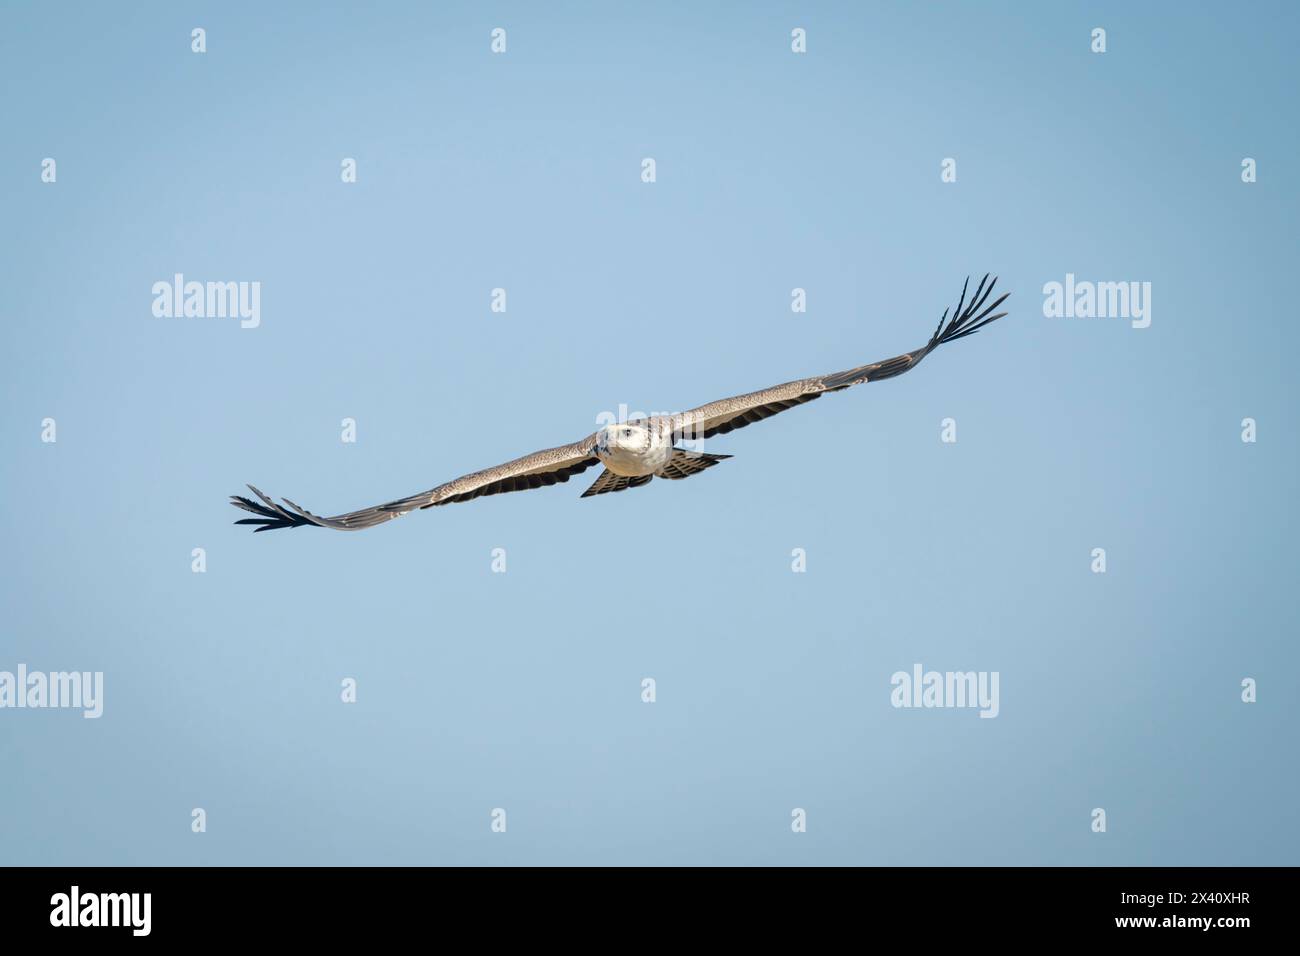 Juvenile martial eagle gliding through blue sky Stock Photo